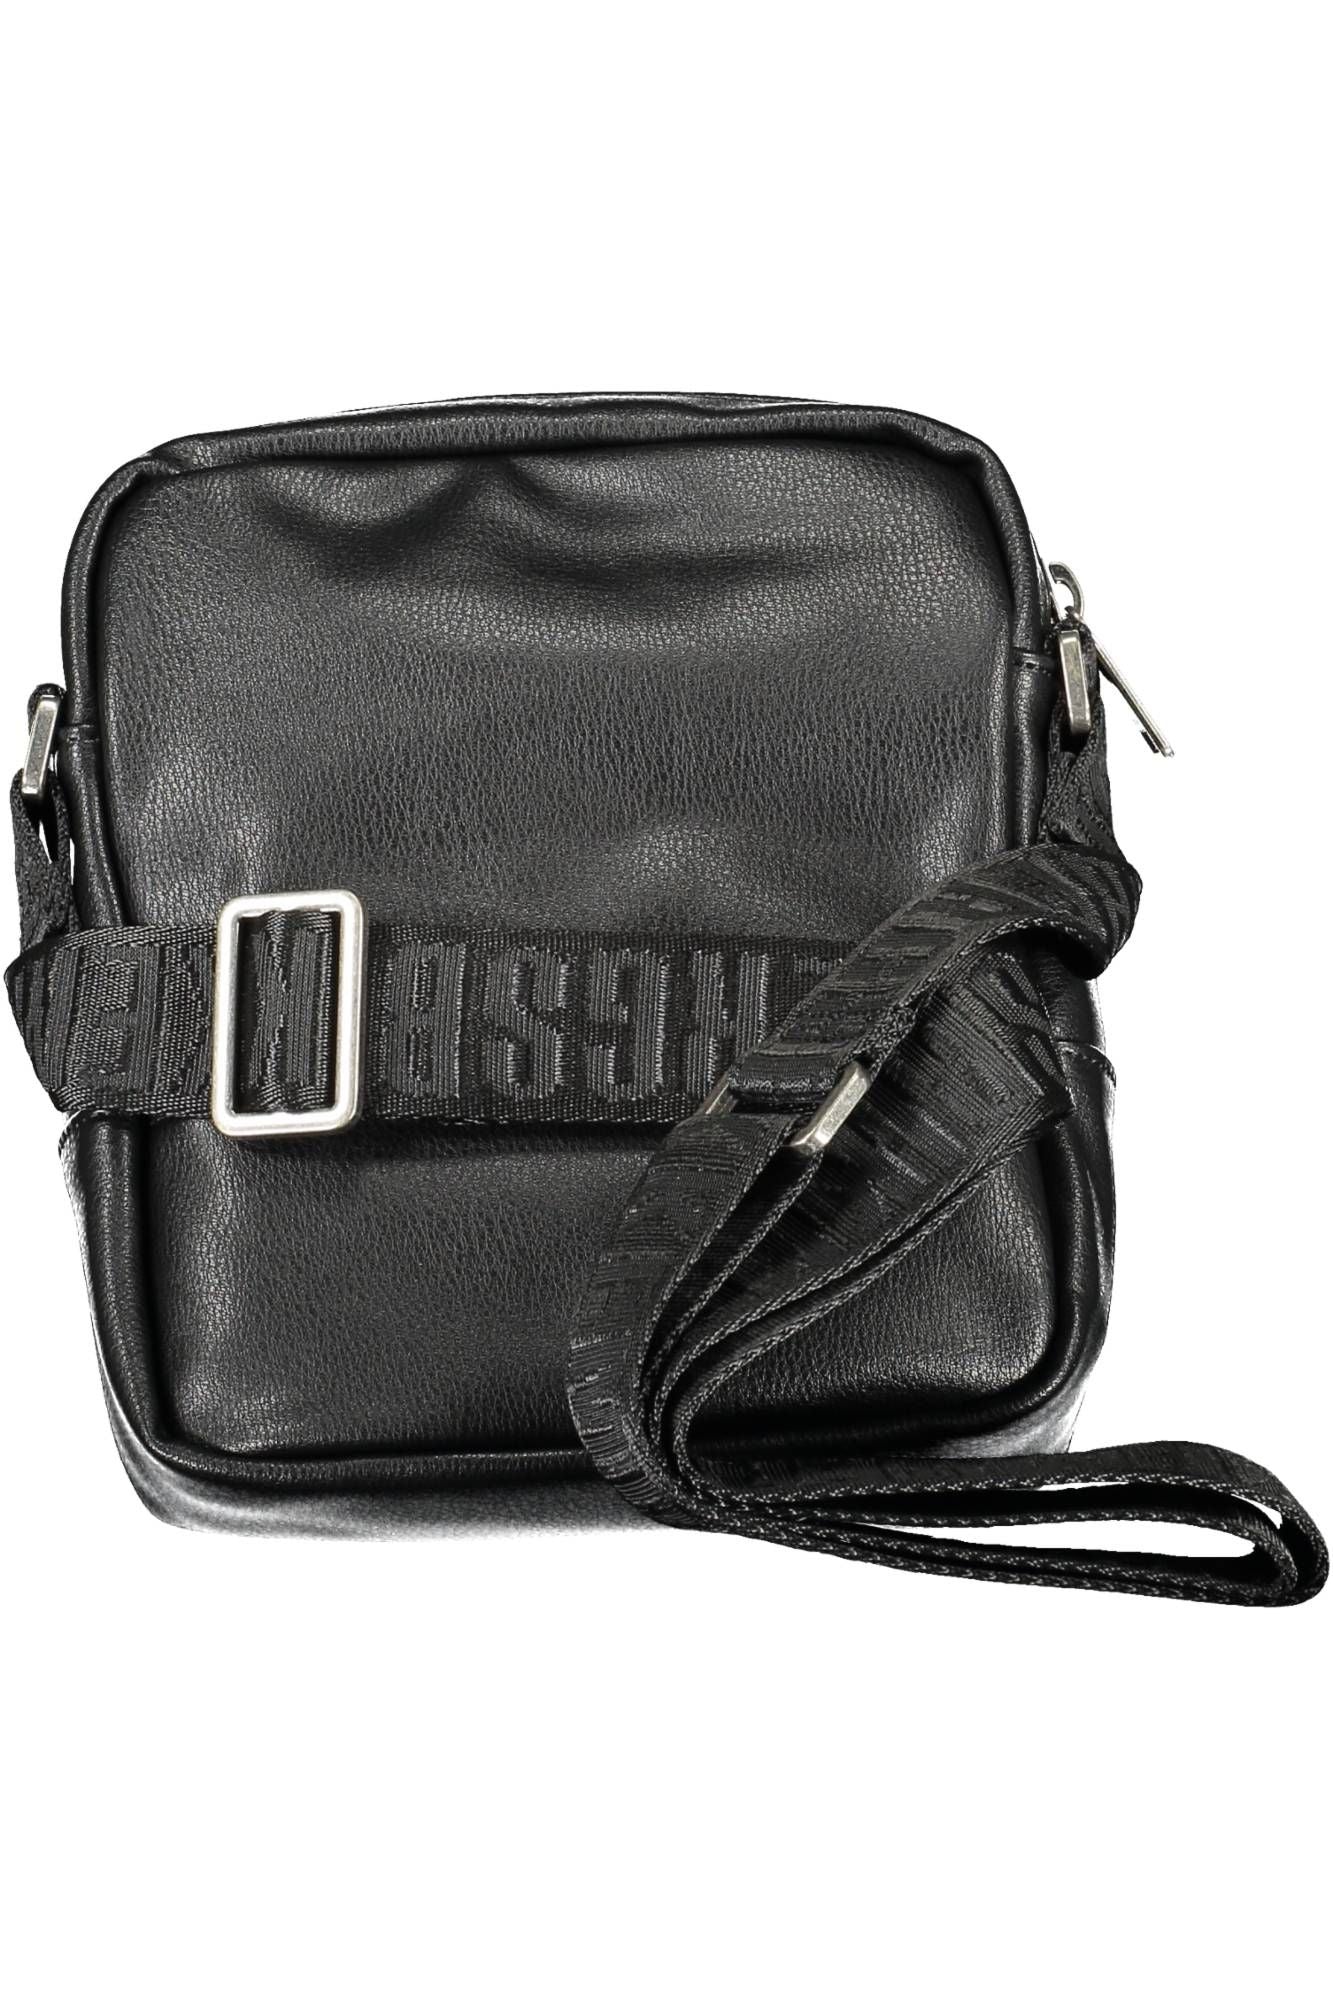 Bikkembergs Black Polyurethane Shoulder Bag